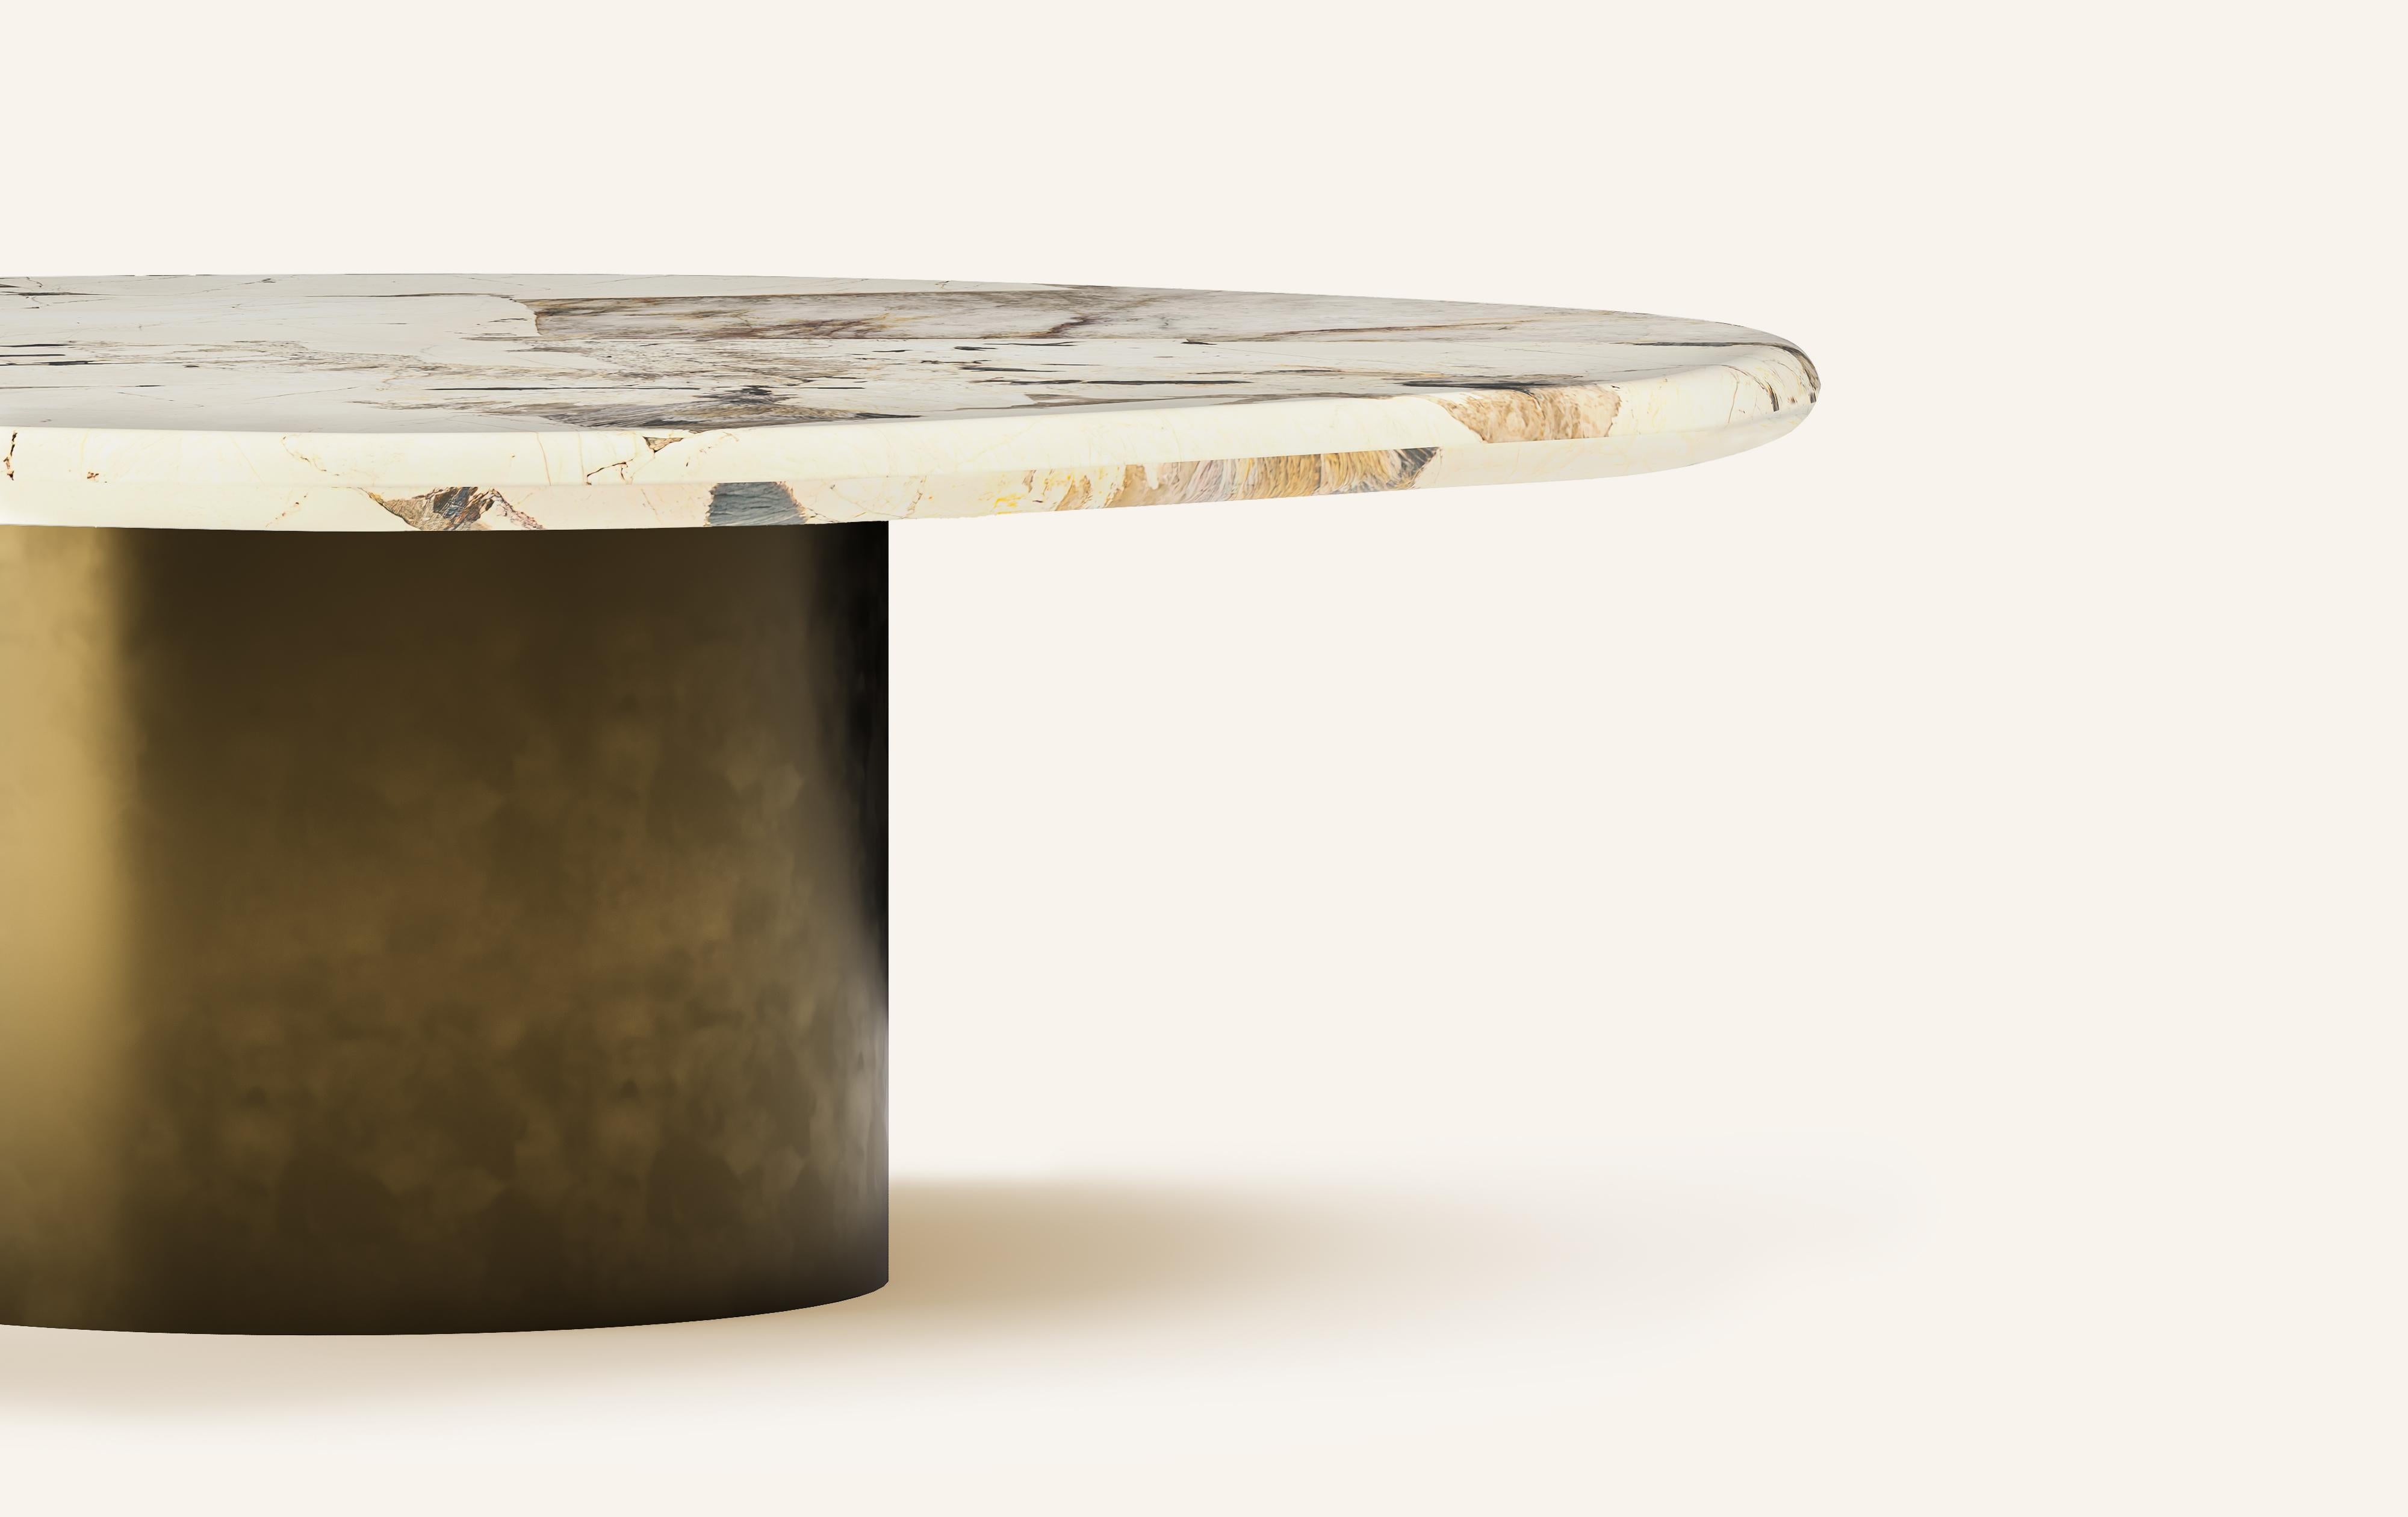 Organic Modern FORM(LA) Lago Round Coffee Table 54”L x 54”W x 14”H Quartzite & Antique Bronze For Sale